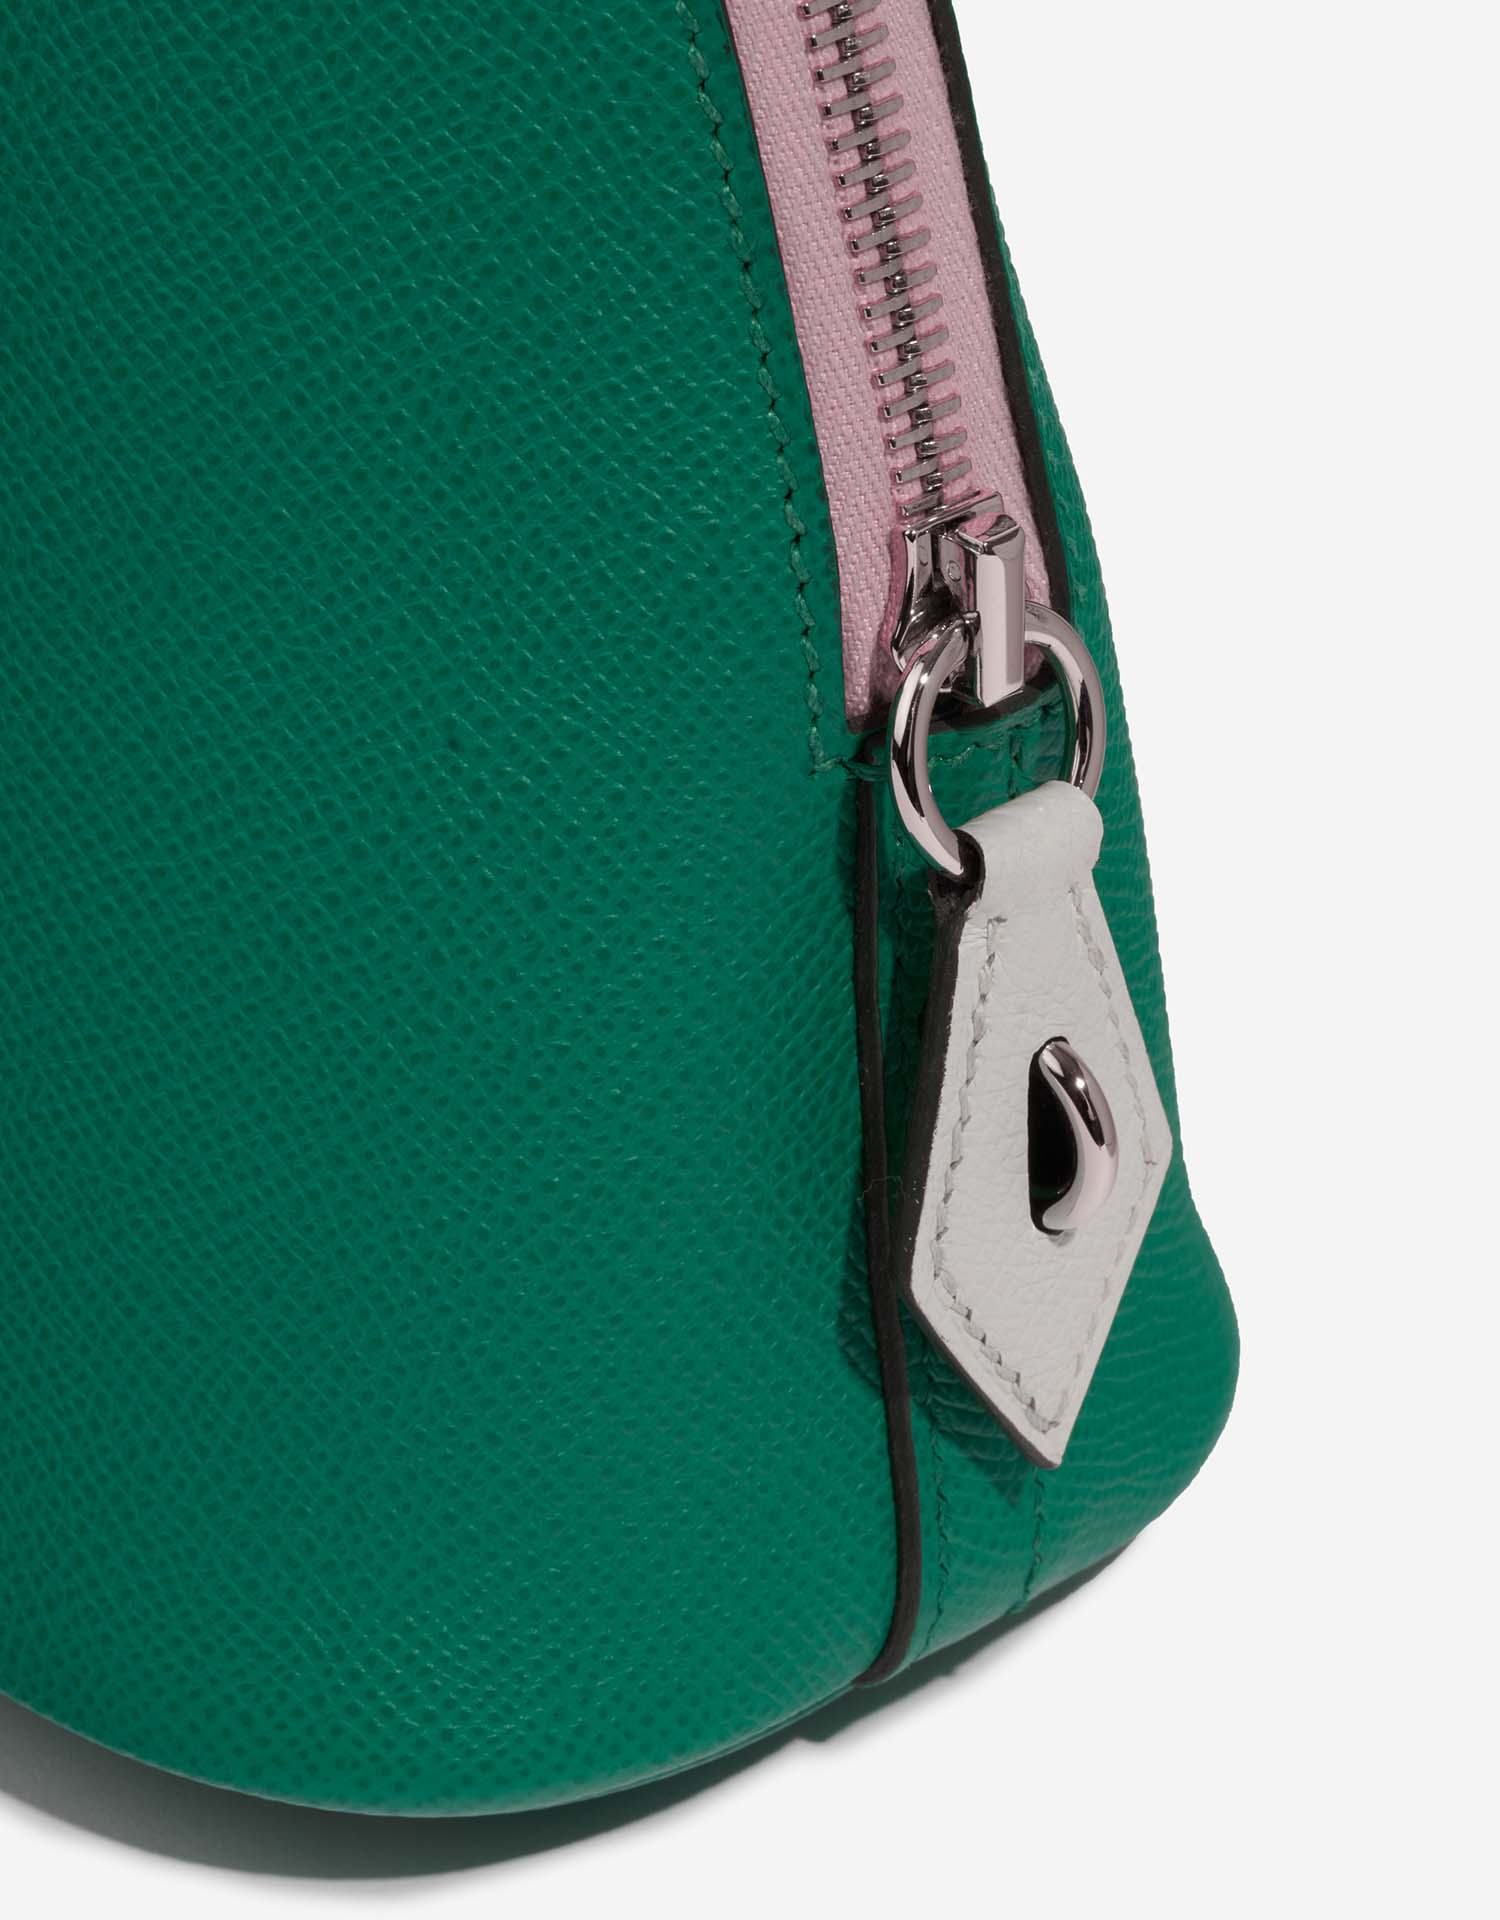 Hermès Bolide 27 VertJade-MauveSylvestre-Nata Verschluss-System | Verkaufen Sie Ihre Designer-Tasche auf Saclab.com